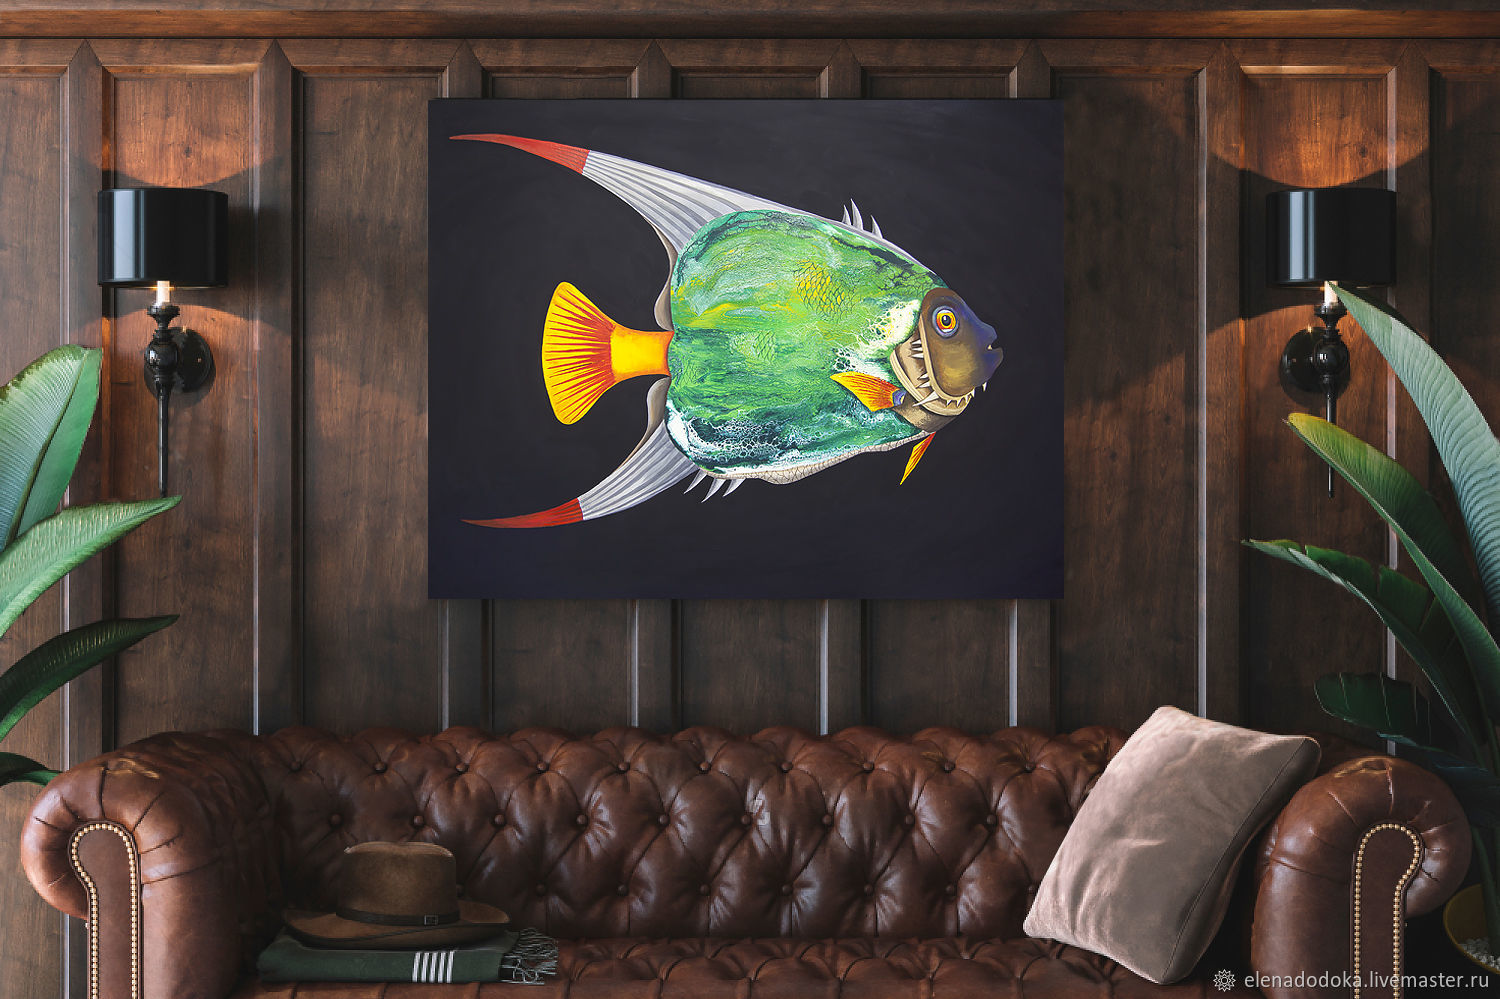 Полотно рыба. Интерьер с рыбками. Интерьерная картина рыбы. Картины с рыбами в интерьере. Рыбы в интерьерной живописи.